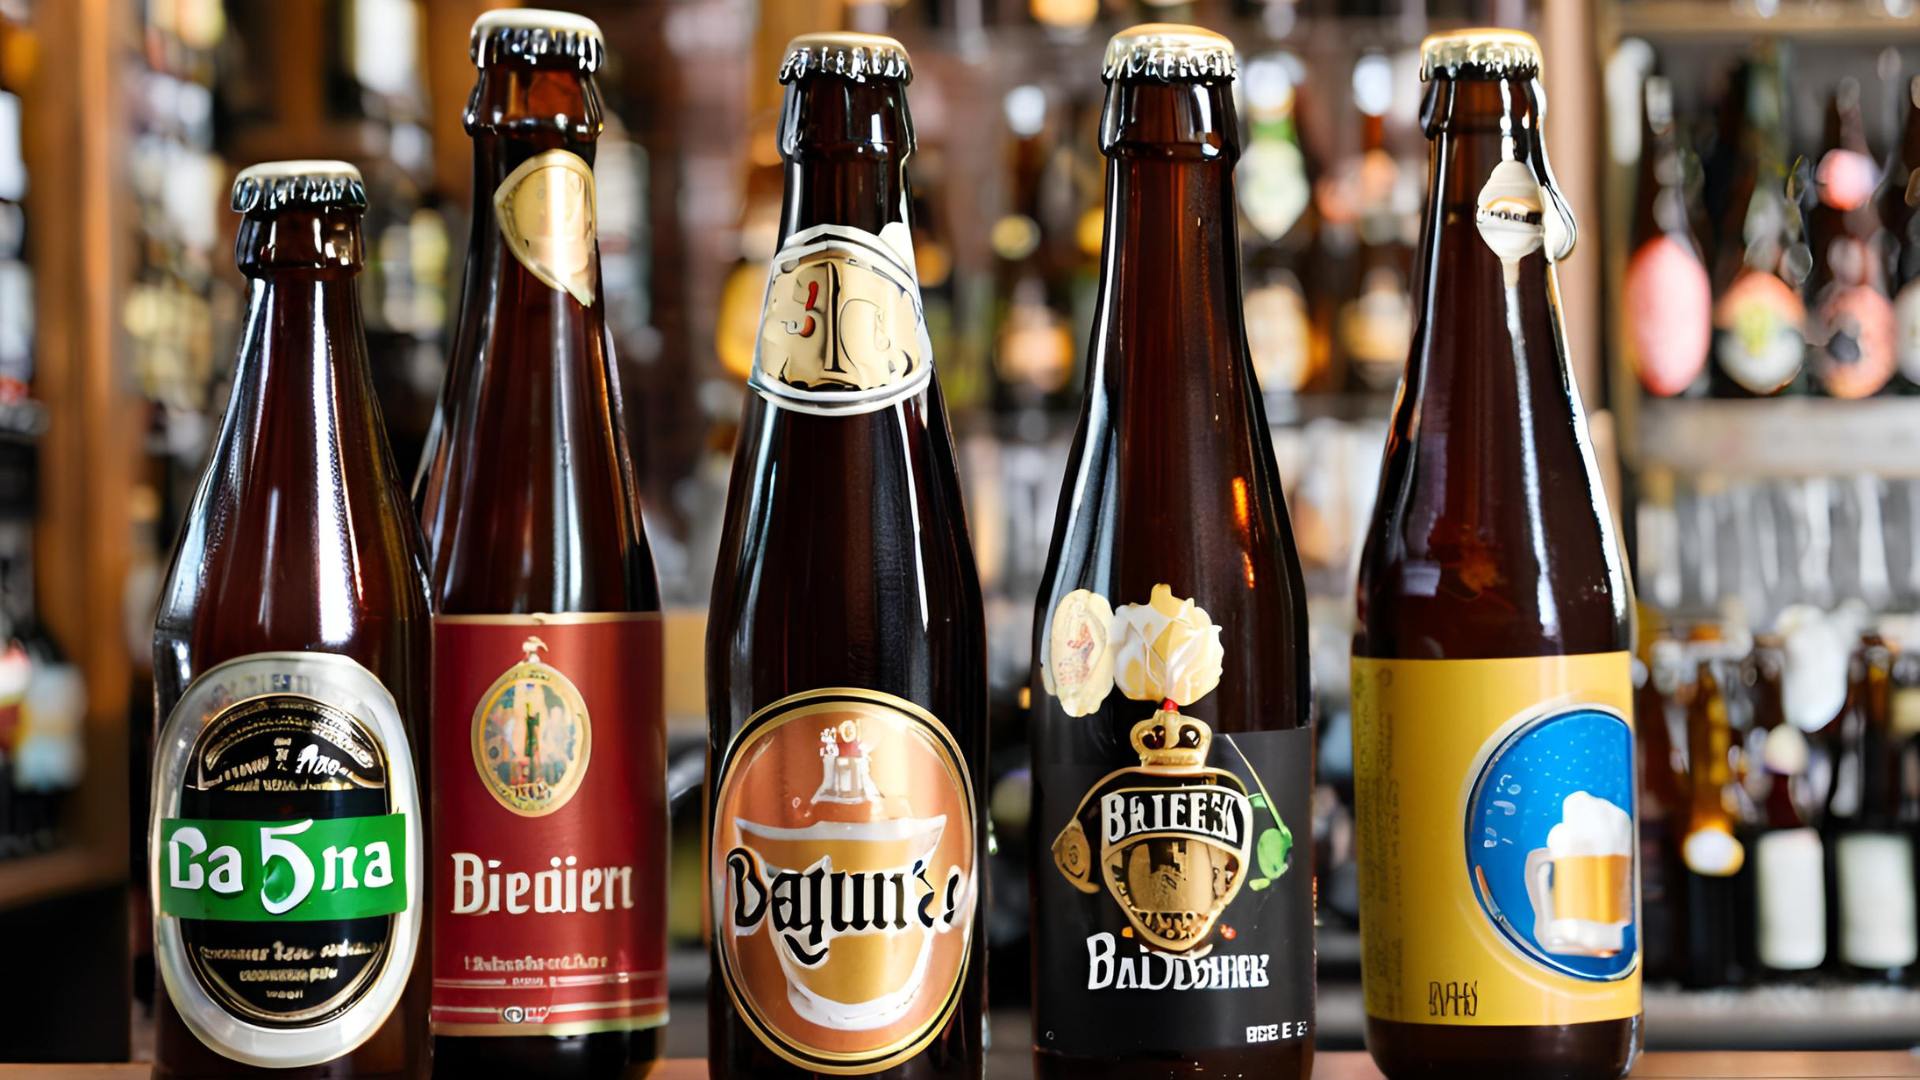 7 Melhores Cervejas Belgas (Hoegaarden, Delirium e mais)